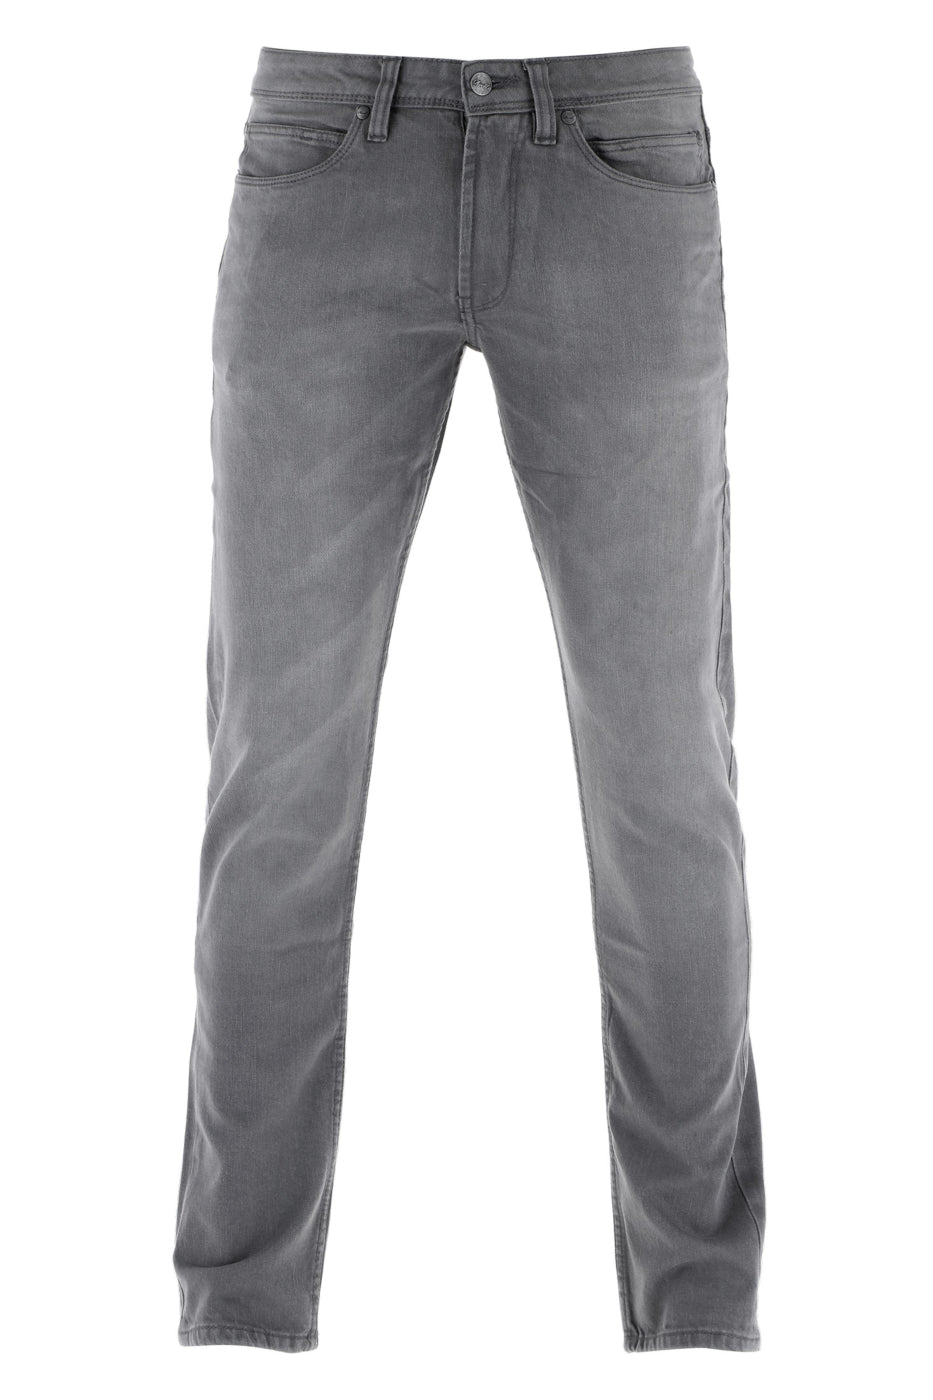 Reell Nova 2 Jeans - Grey